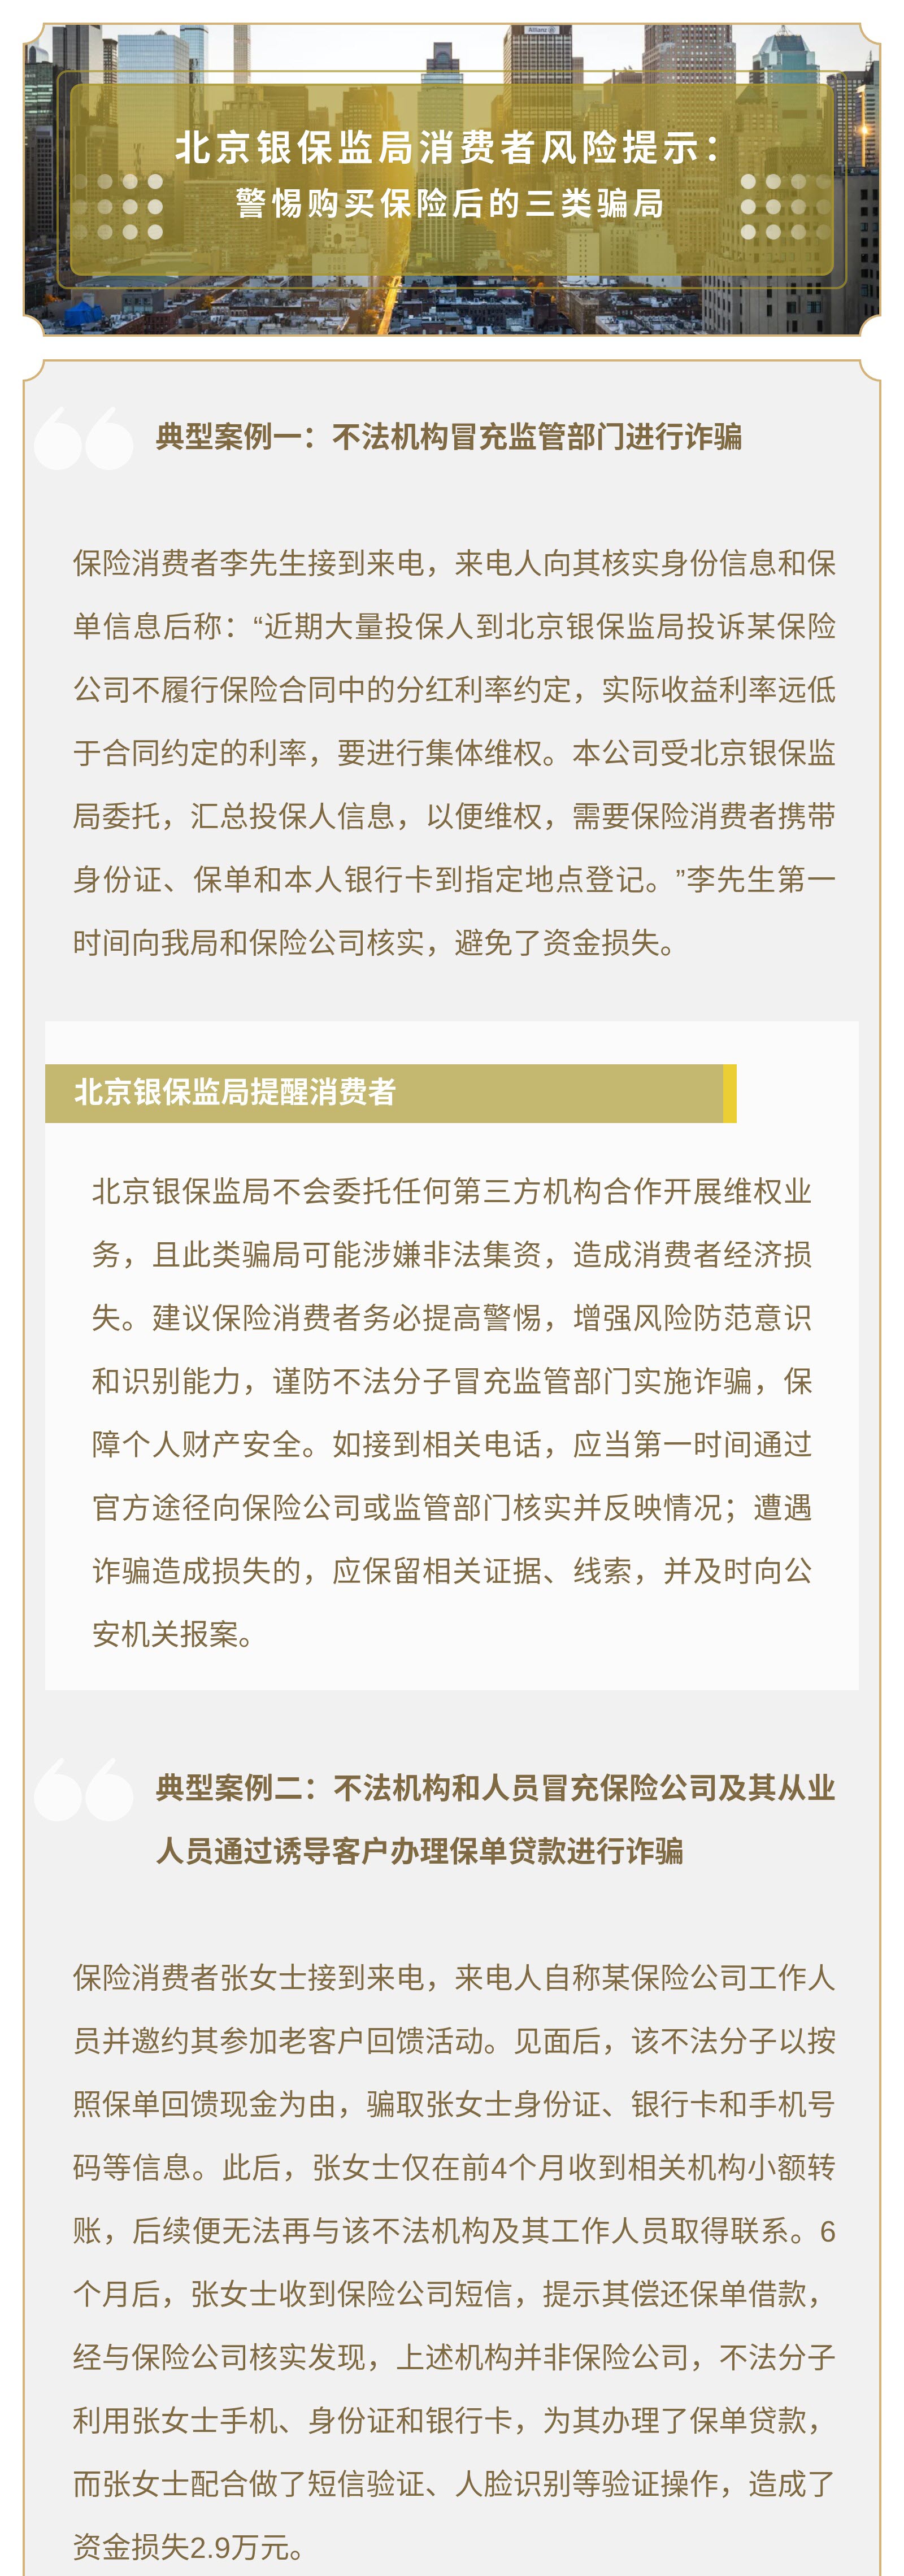 北京银保监局消费者风险提示： 警惕购买保险后的三类骗局01.jpg